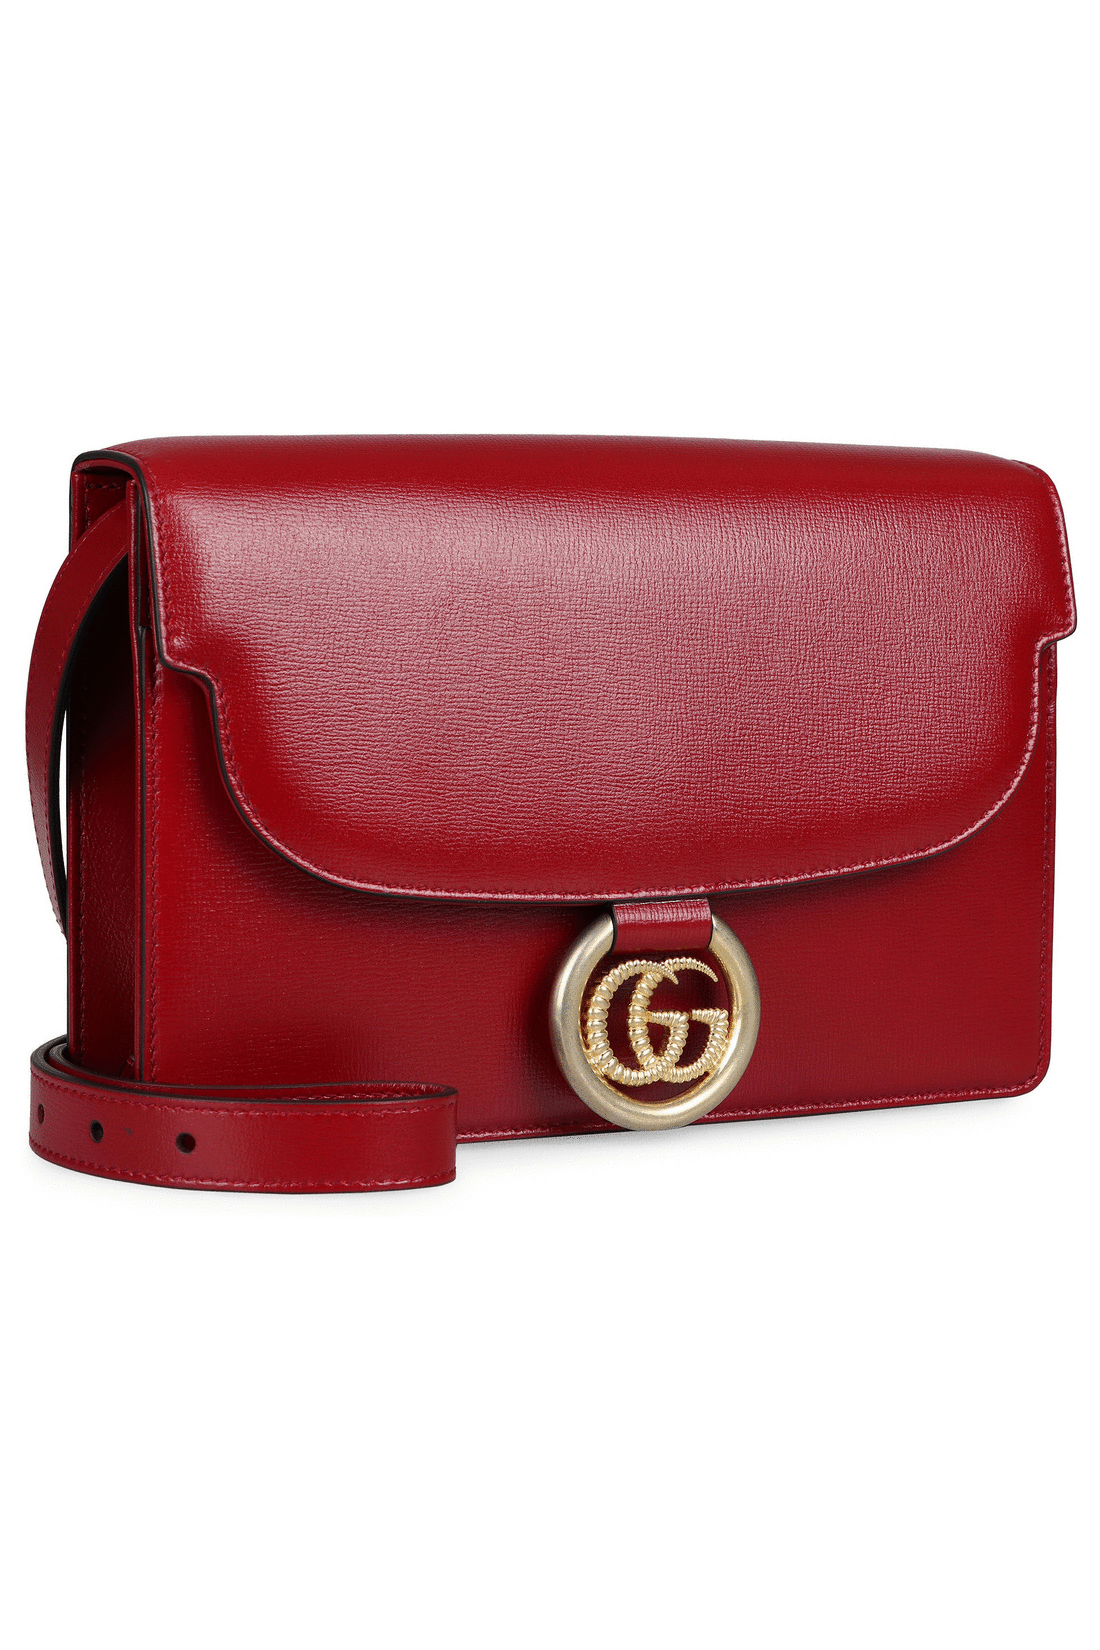 GG Ring leather mini shoulder bag